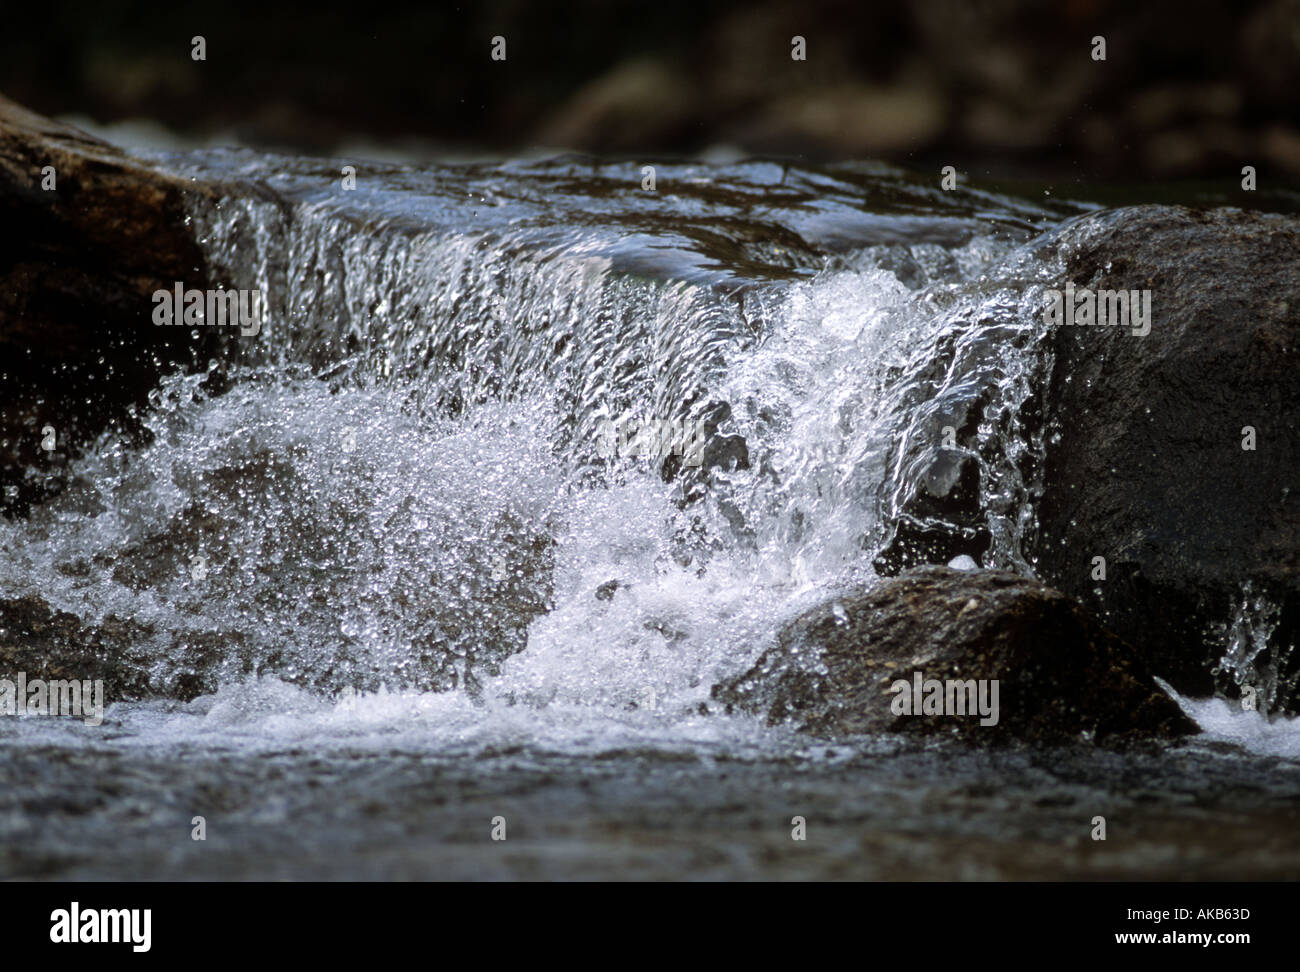 L' eau fraîche Claire glisse sur le bord du rocher de granit noir et les éclaboussures de l'avant dans un close up river stream Banque D'Images